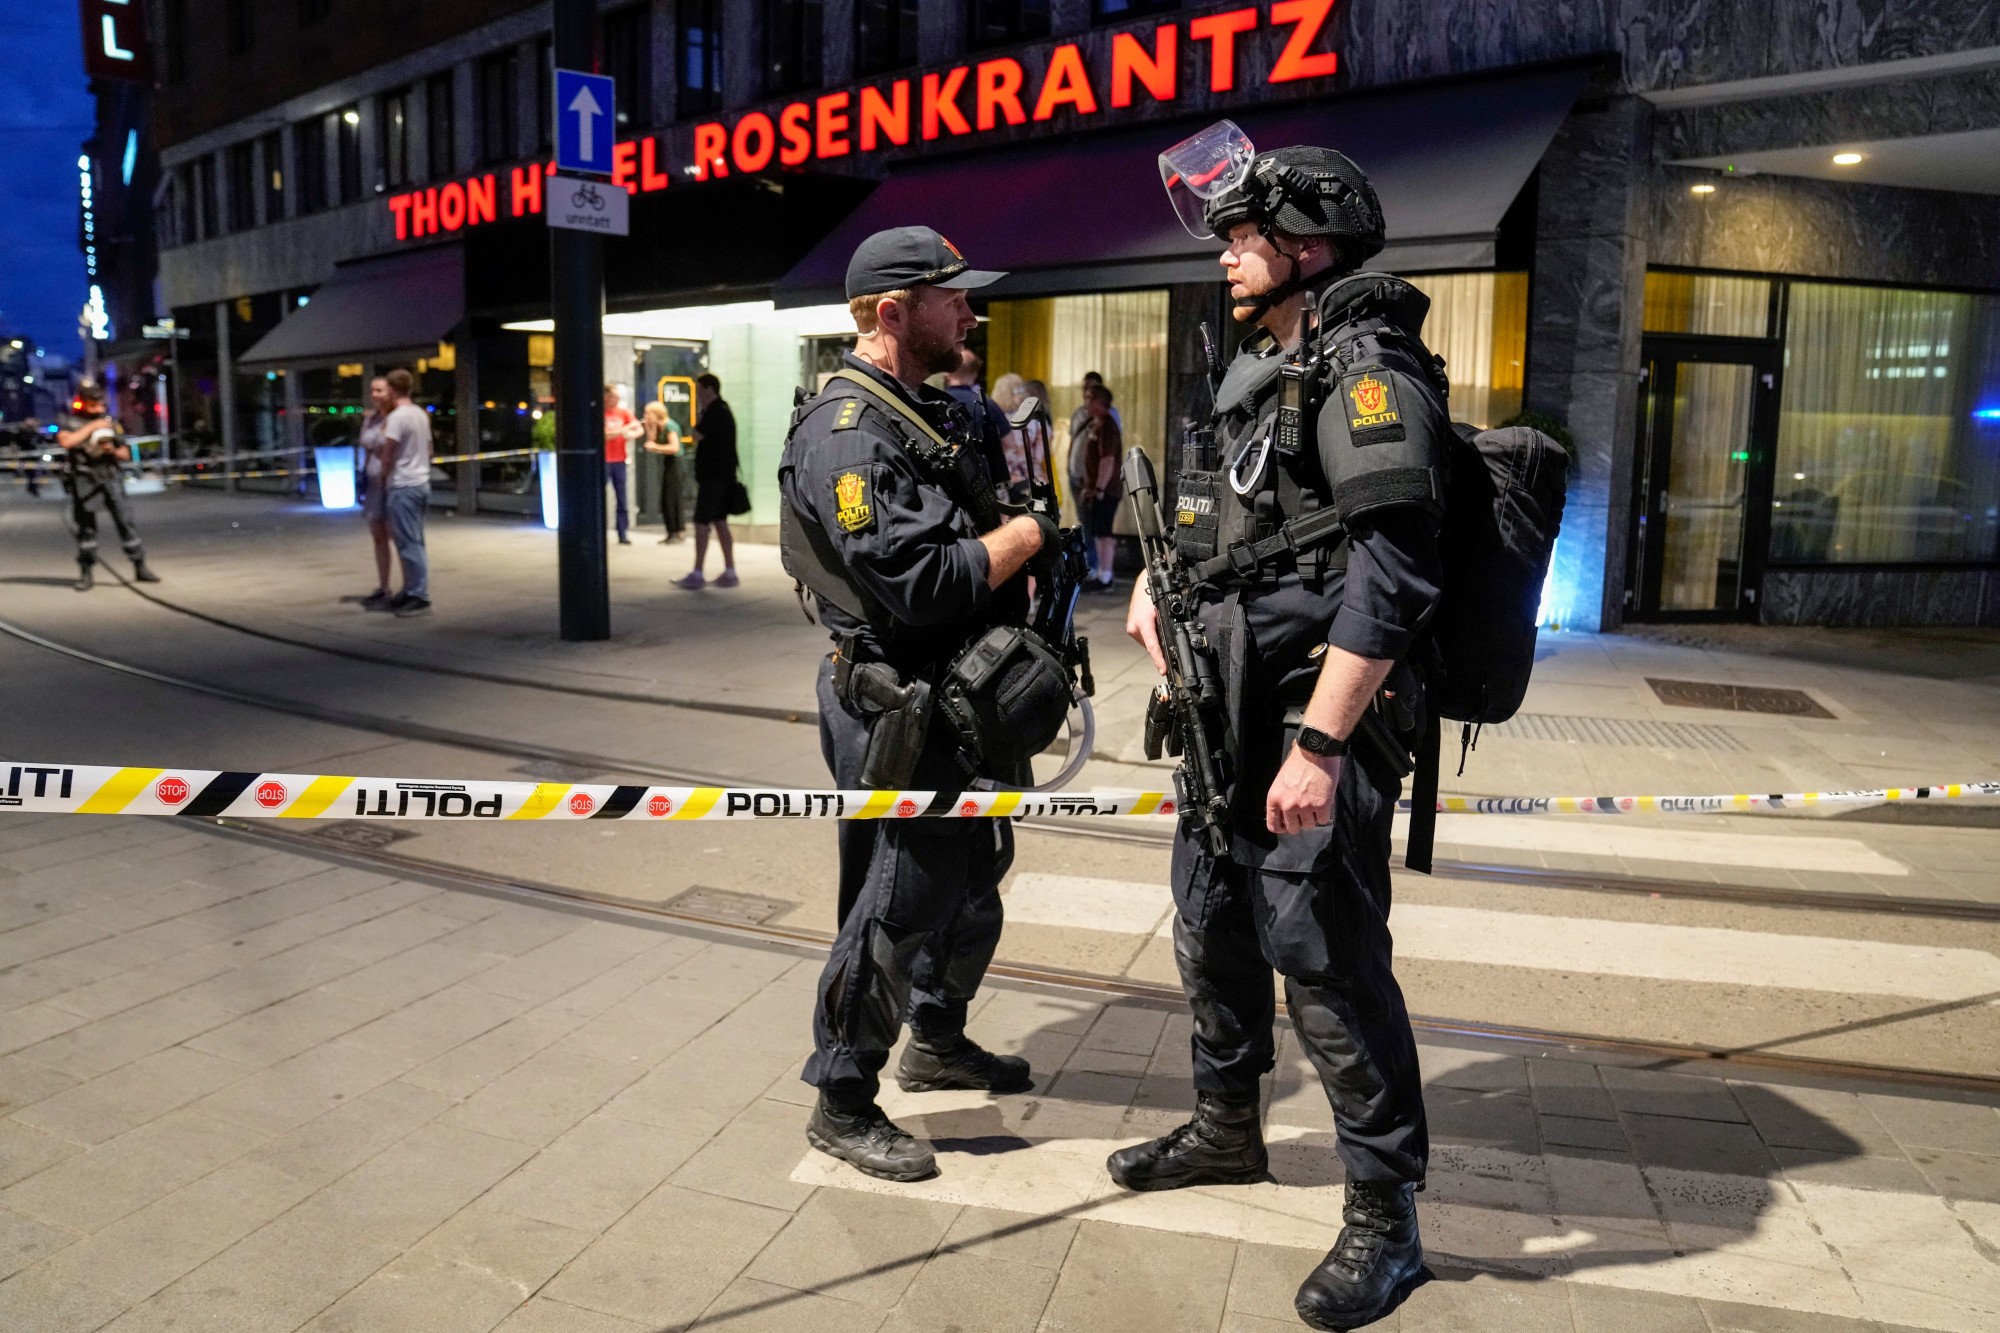 Lövöldöztek Oslóban, két ember meghalt, 14 ember megsebesült